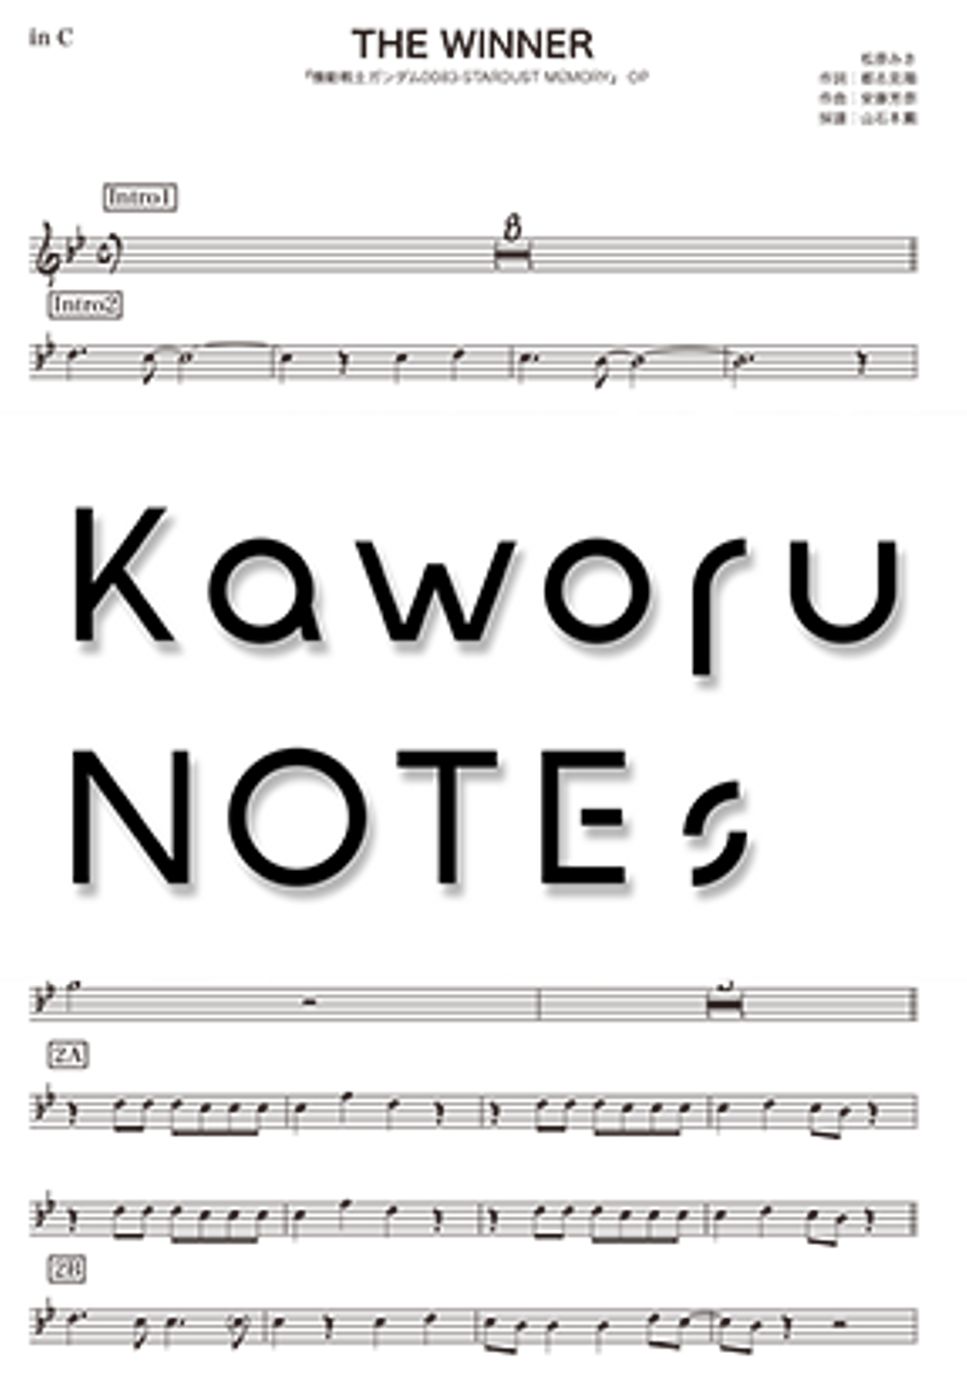 松原みき - THE WINNER（in E♭/『機動戦士ガンダム0083-STARDUST MEMORY』） by Kaworu NOTEs